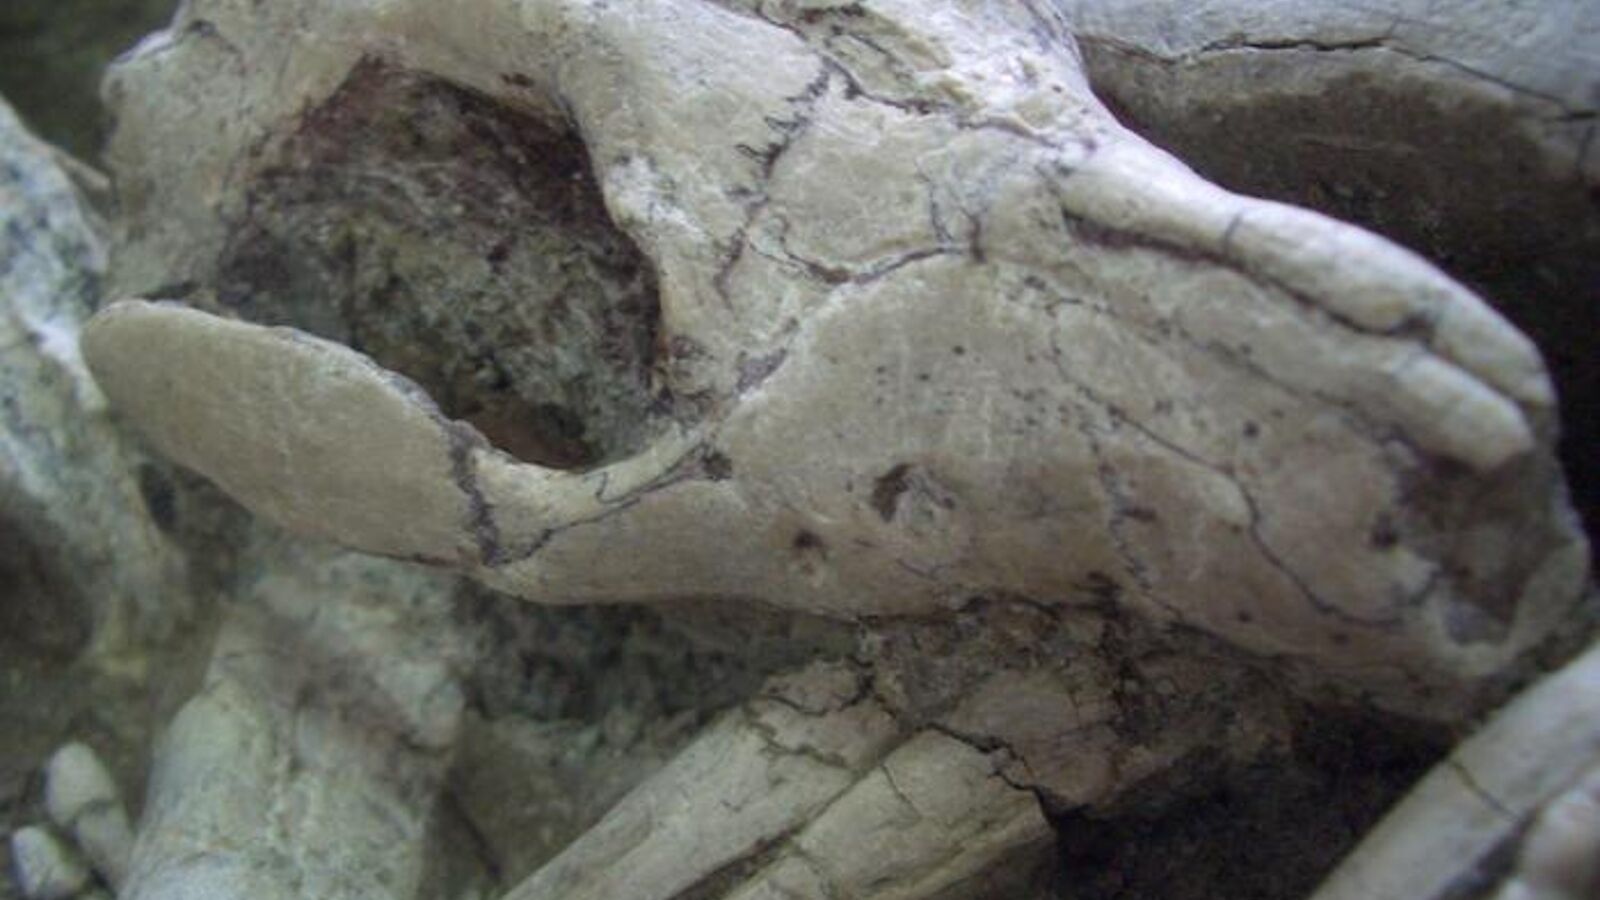 Ученые обнаружили окаменелость, являющуюся доказательством ''смертельной битвы'', произошедшей 125 млн лет назад (фото)